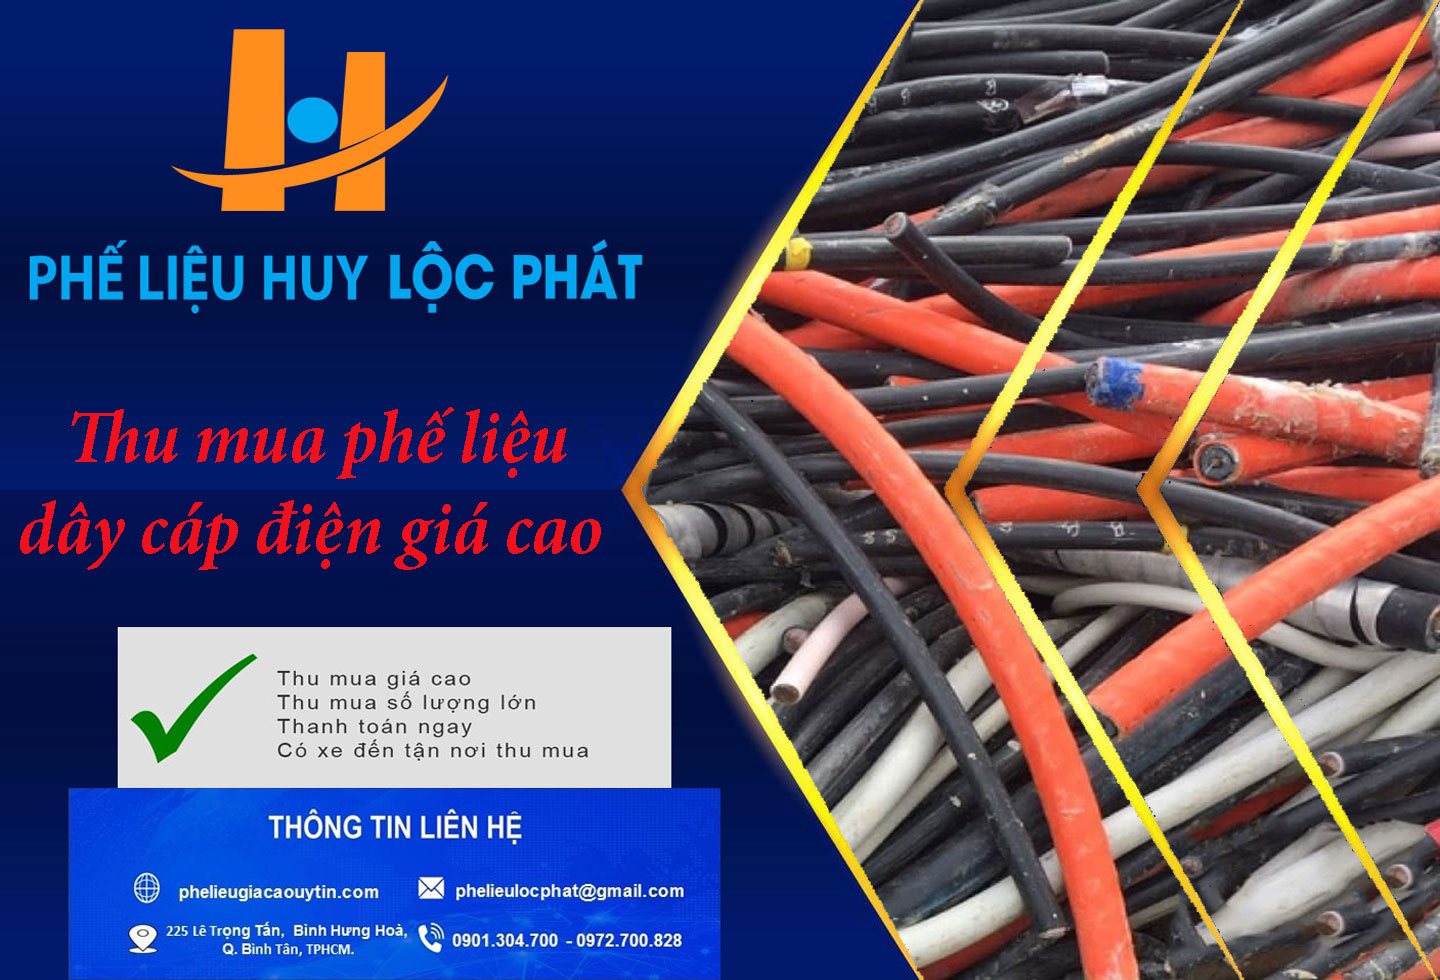 Thu mua phế liệu dây cáp điện giá cao trên toàn quốc – Huy Lộc Phát